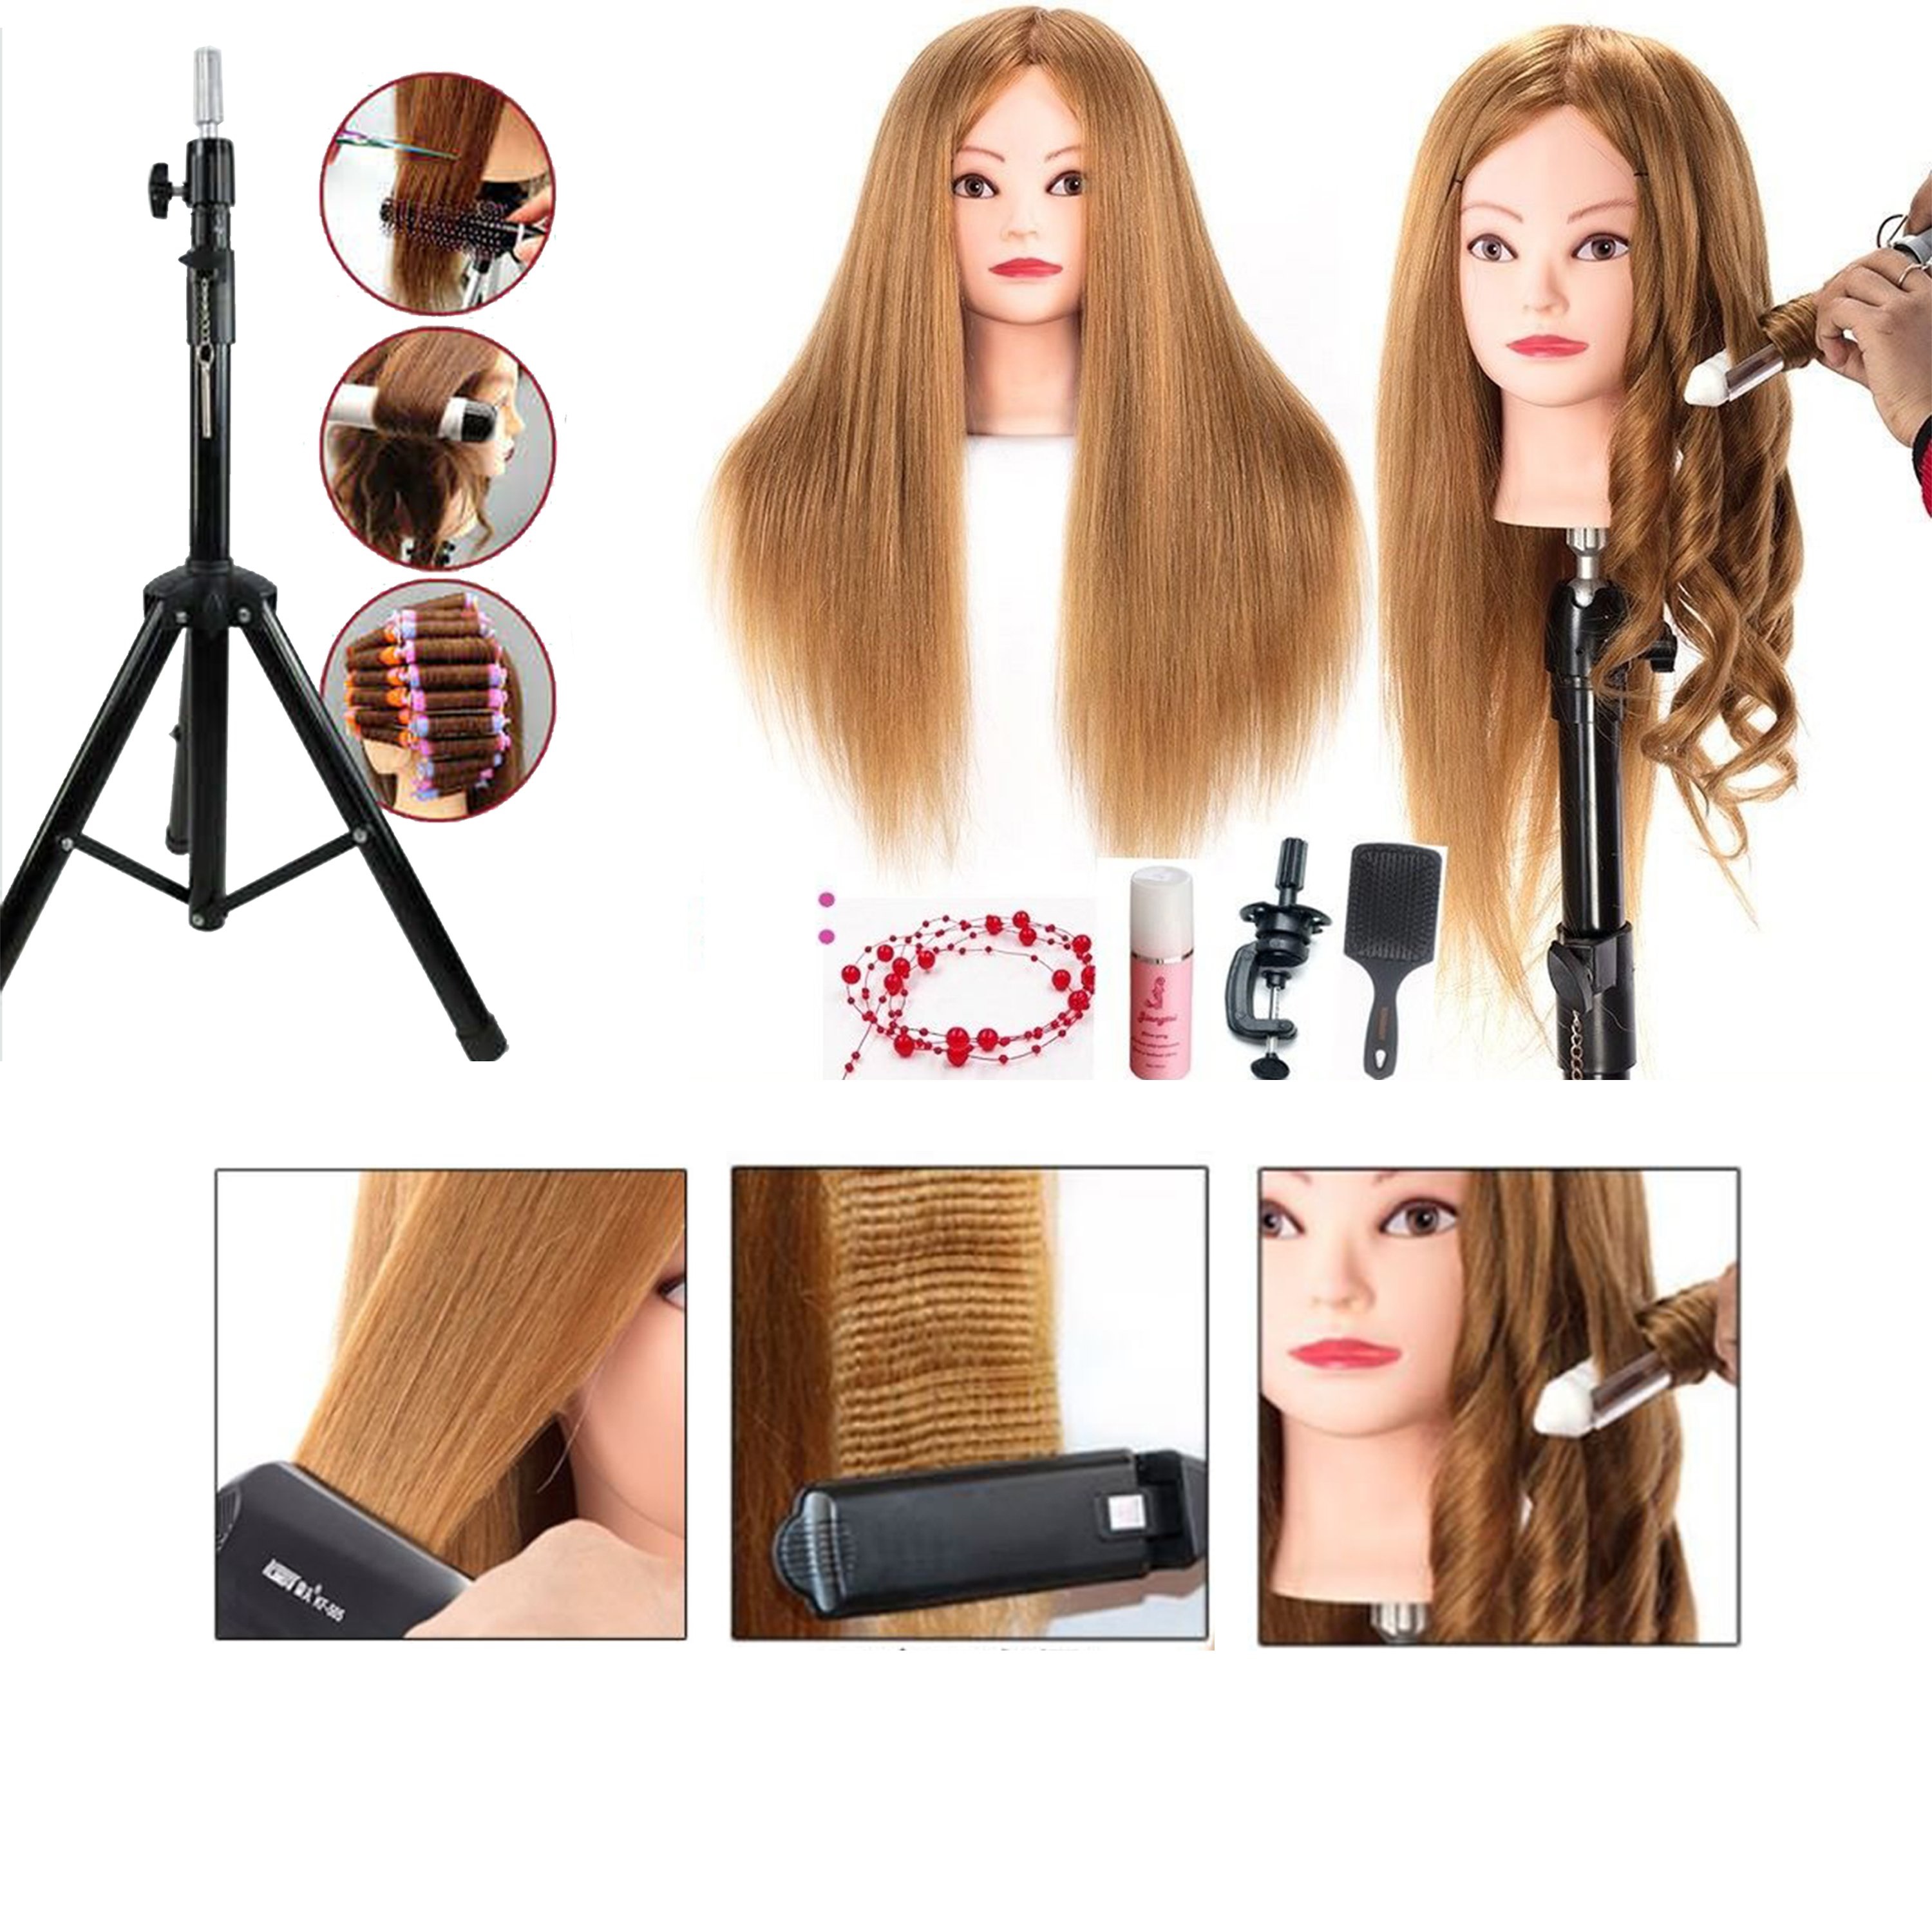 Nếu bạn đang tìm kiếm một giải pháp tóc thật đáng tin cậy, đừng bỏ qua ảnh về Đầu Canh Nữ tuyệt đẹp này. Được chế tạo bằng chất liệu chịu nhiệt cao cấp, sản phẩm này sẽ giúp bạn tự tin diện tóc mỗi ngày.